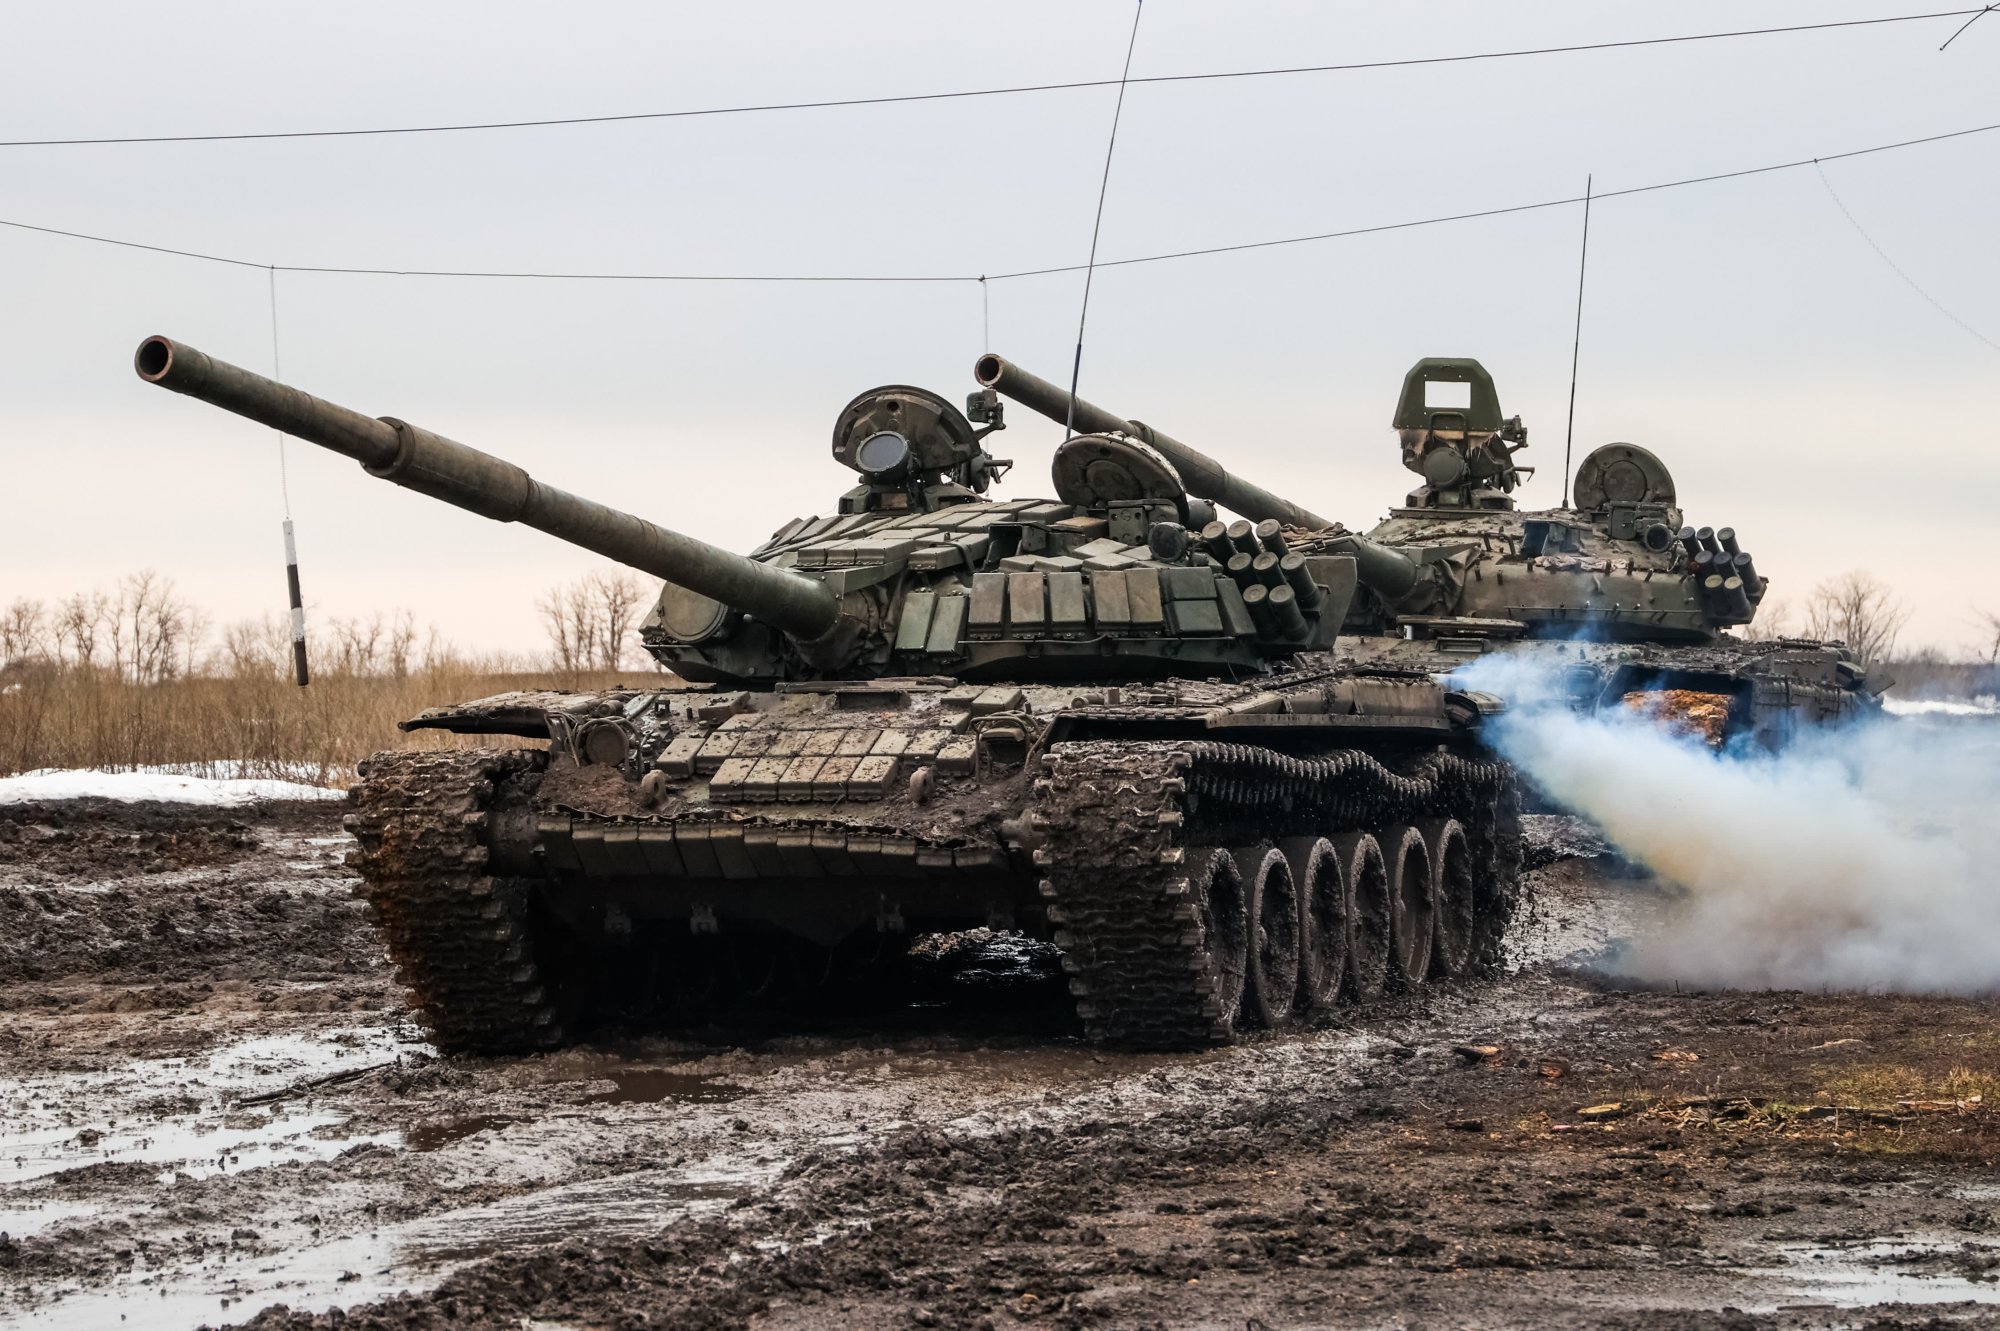 Ουκρανία: Δύο χρόνια από την εισβολή της Ρωσίας - Ποιος είναι πιο κοντά στον στόχο του